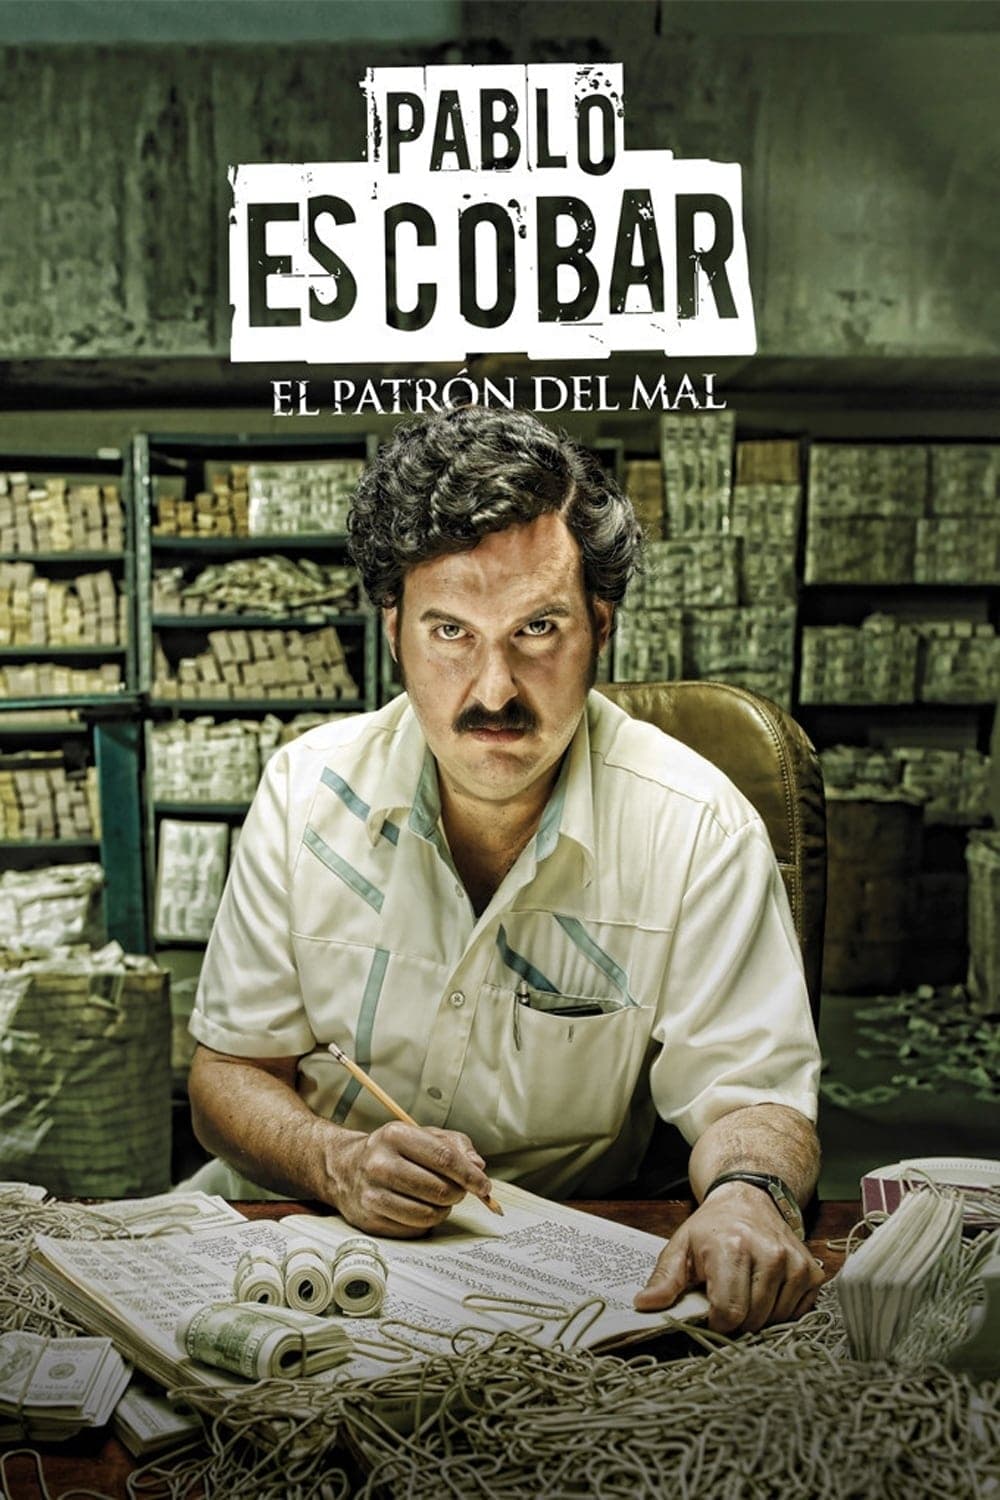 Pablo Escobar: O Senhor do Tráfico